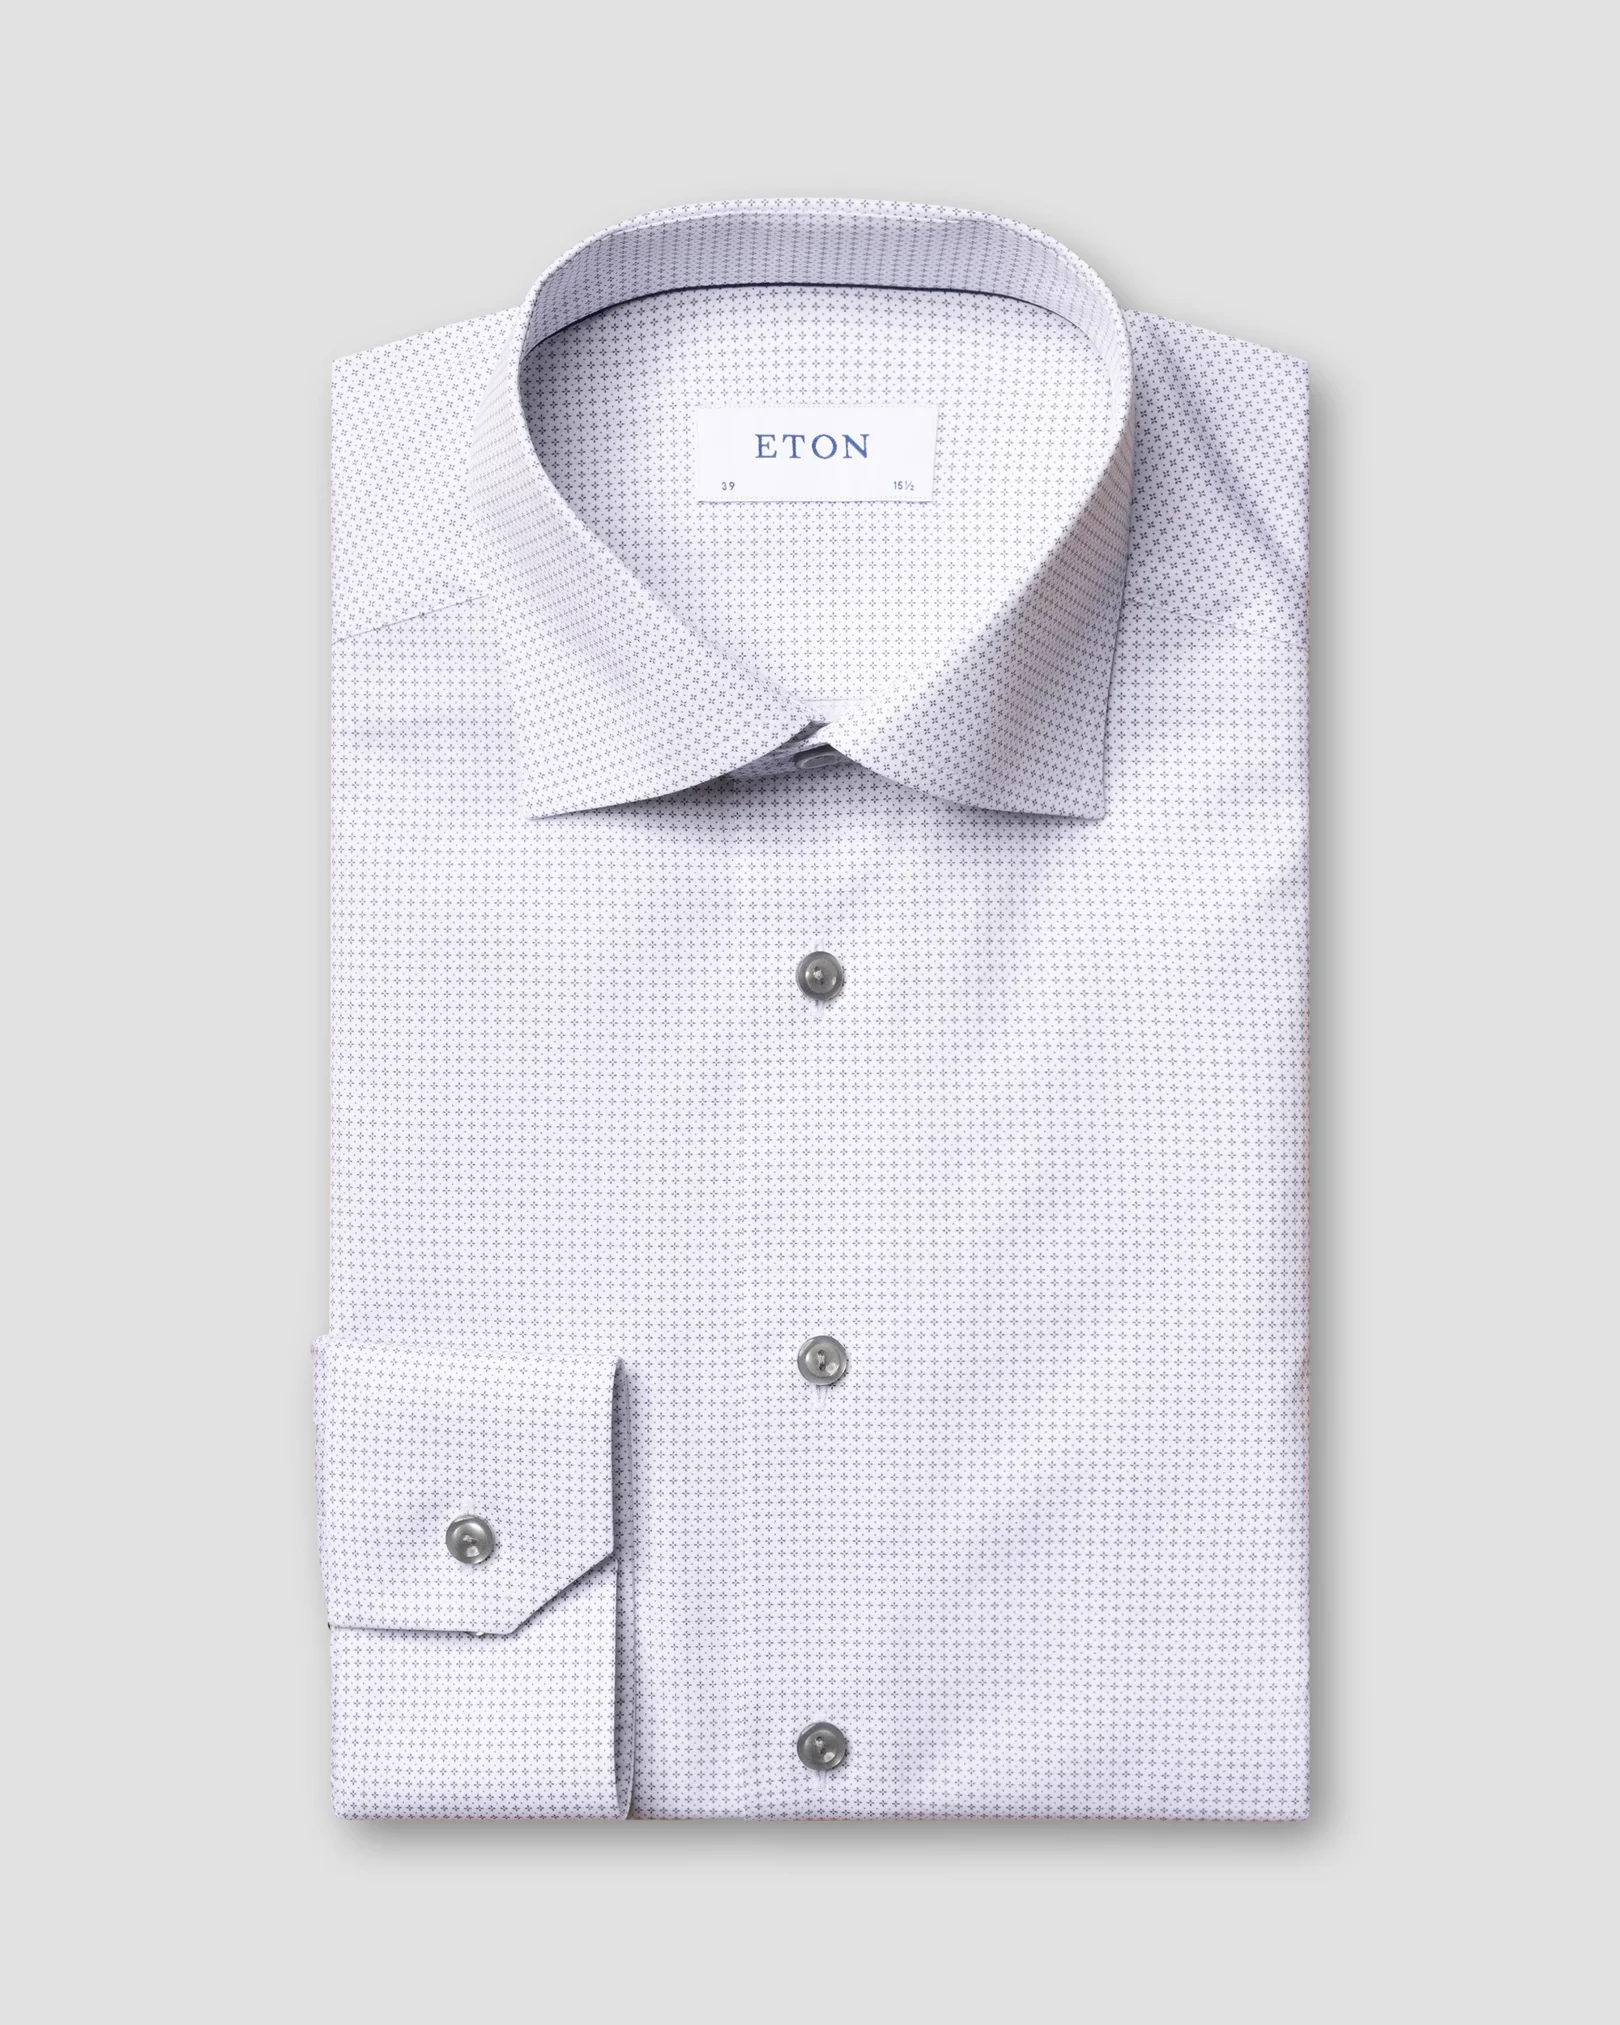 Eton - grey microprinted shirt